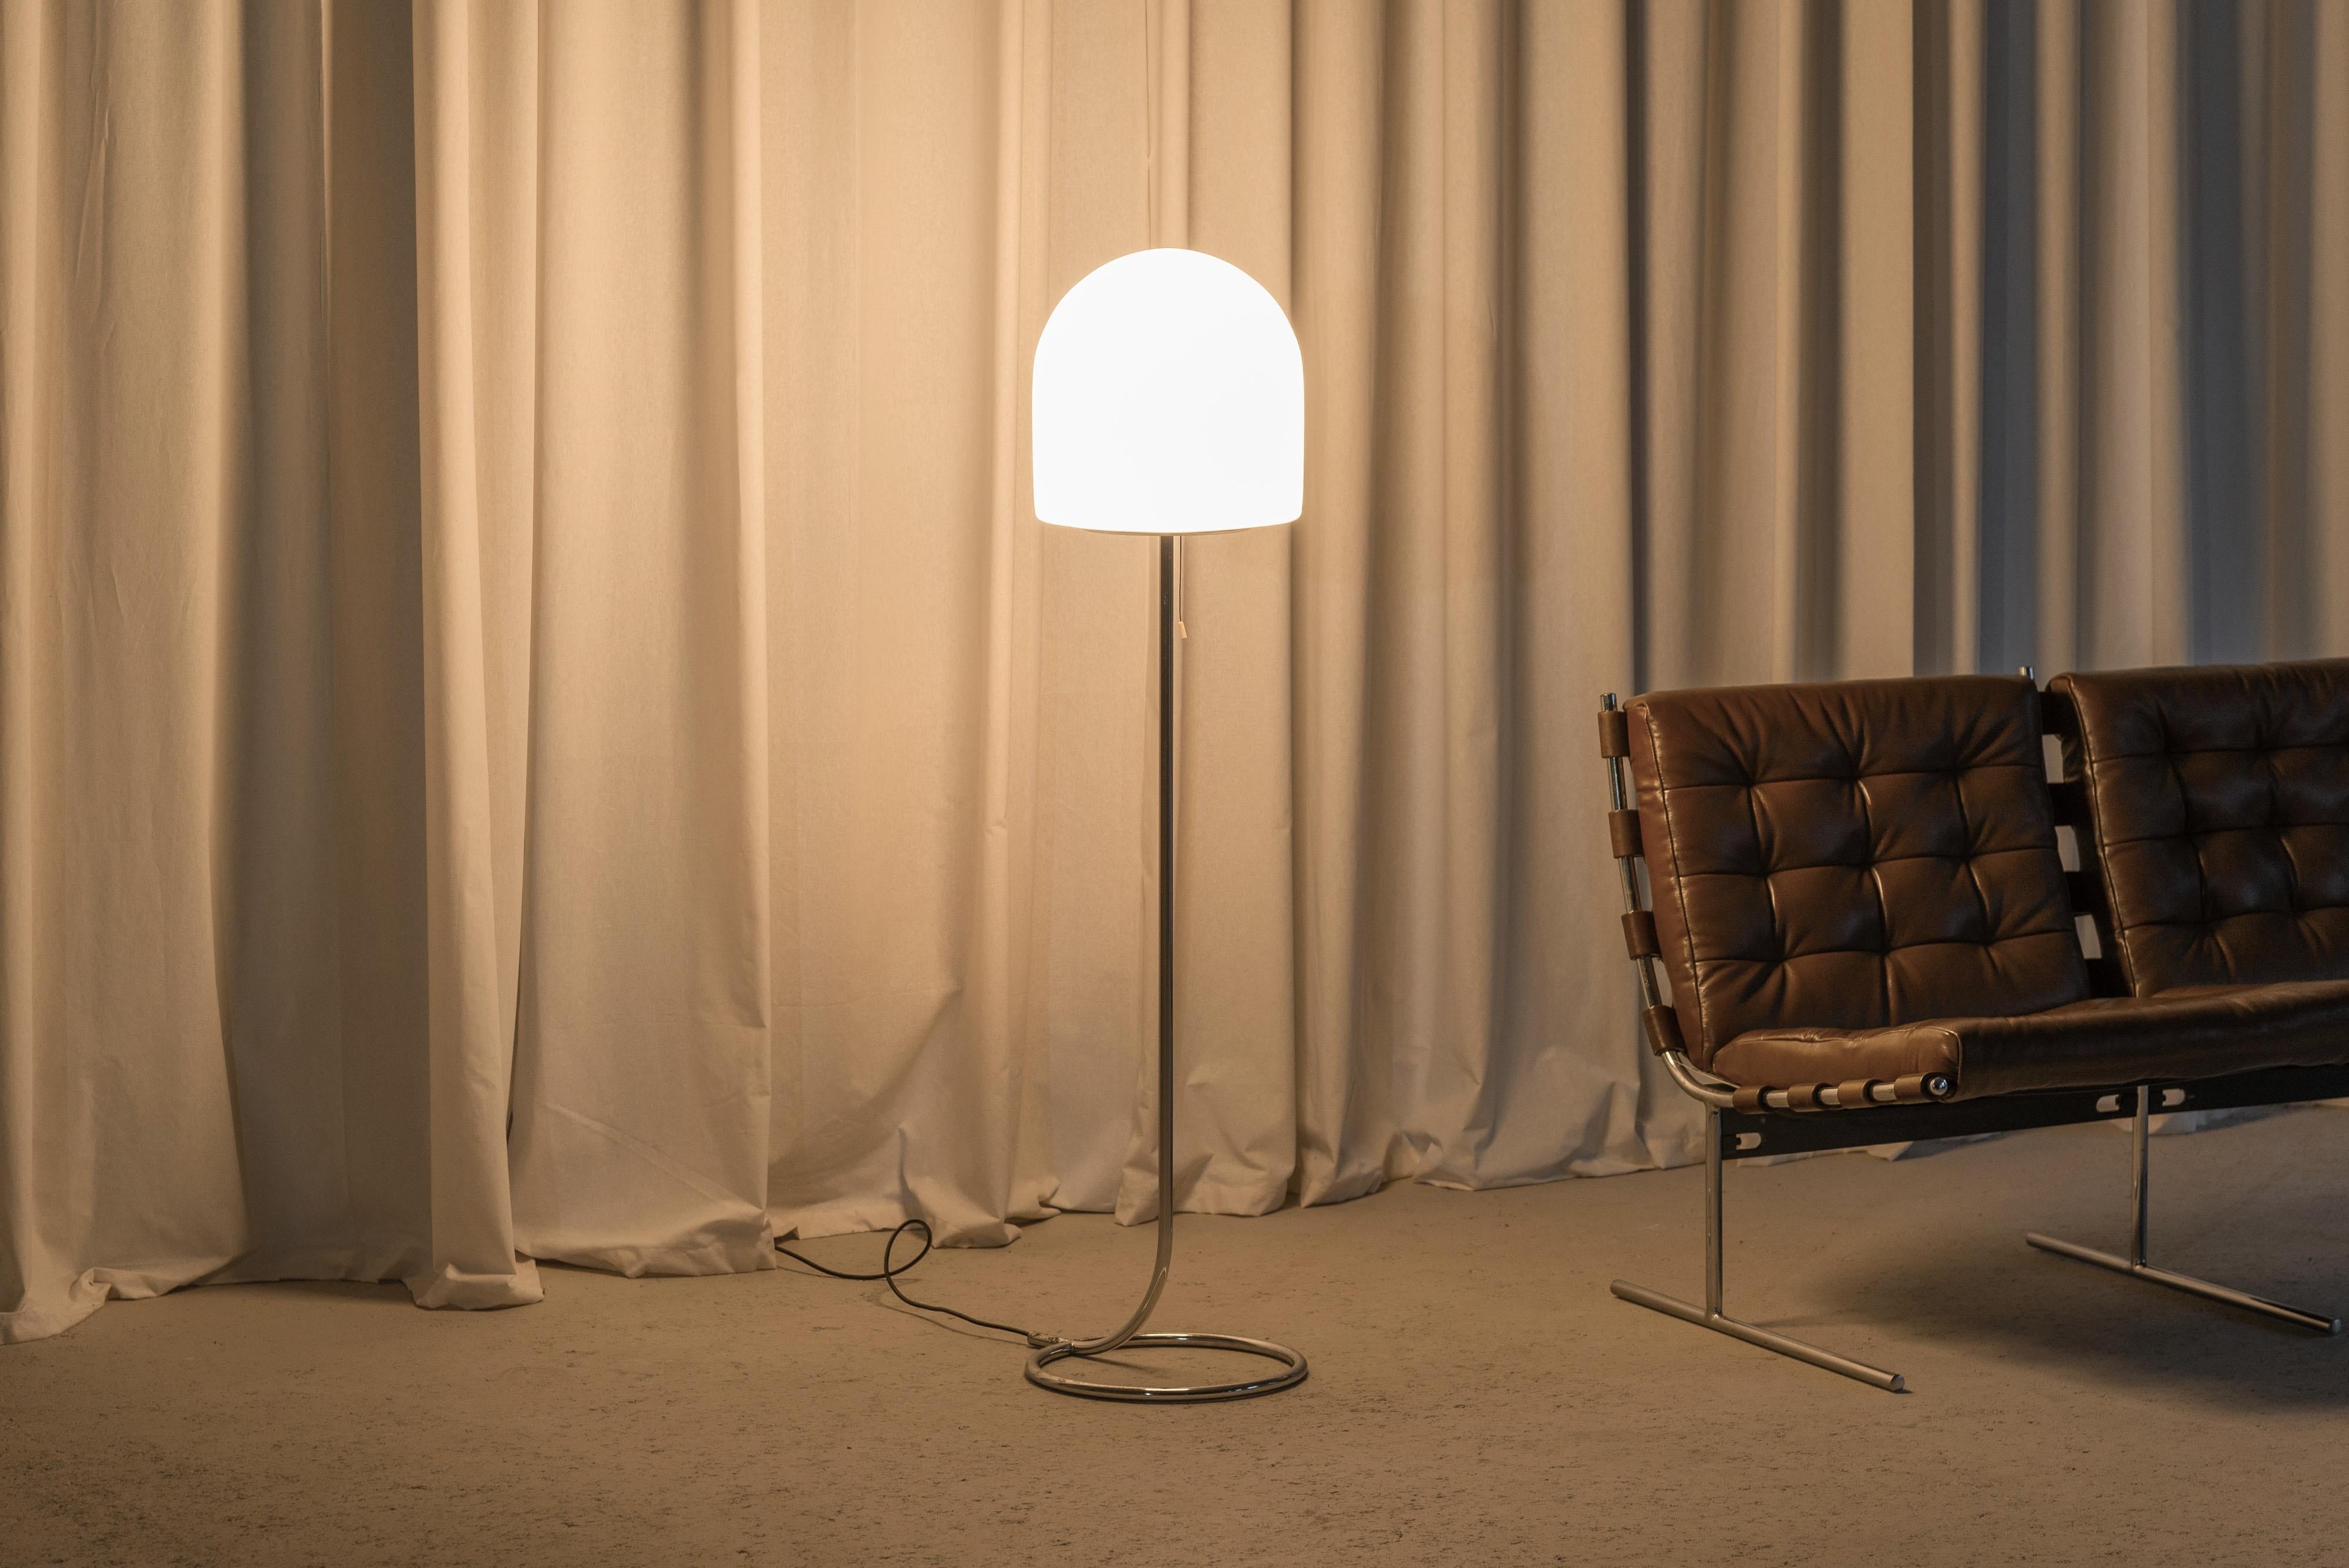 Lampadaire minimaliste modèle A251 conçu par Aldo van den Nieuwelaar et fabriqué par Artimeta aux Pays-Bas en 1972. Elle est fabriquée en acier chromé mat avec un abat-jour unique en forme de dôme en verre dépoli blanc laiteux. La tige fine se